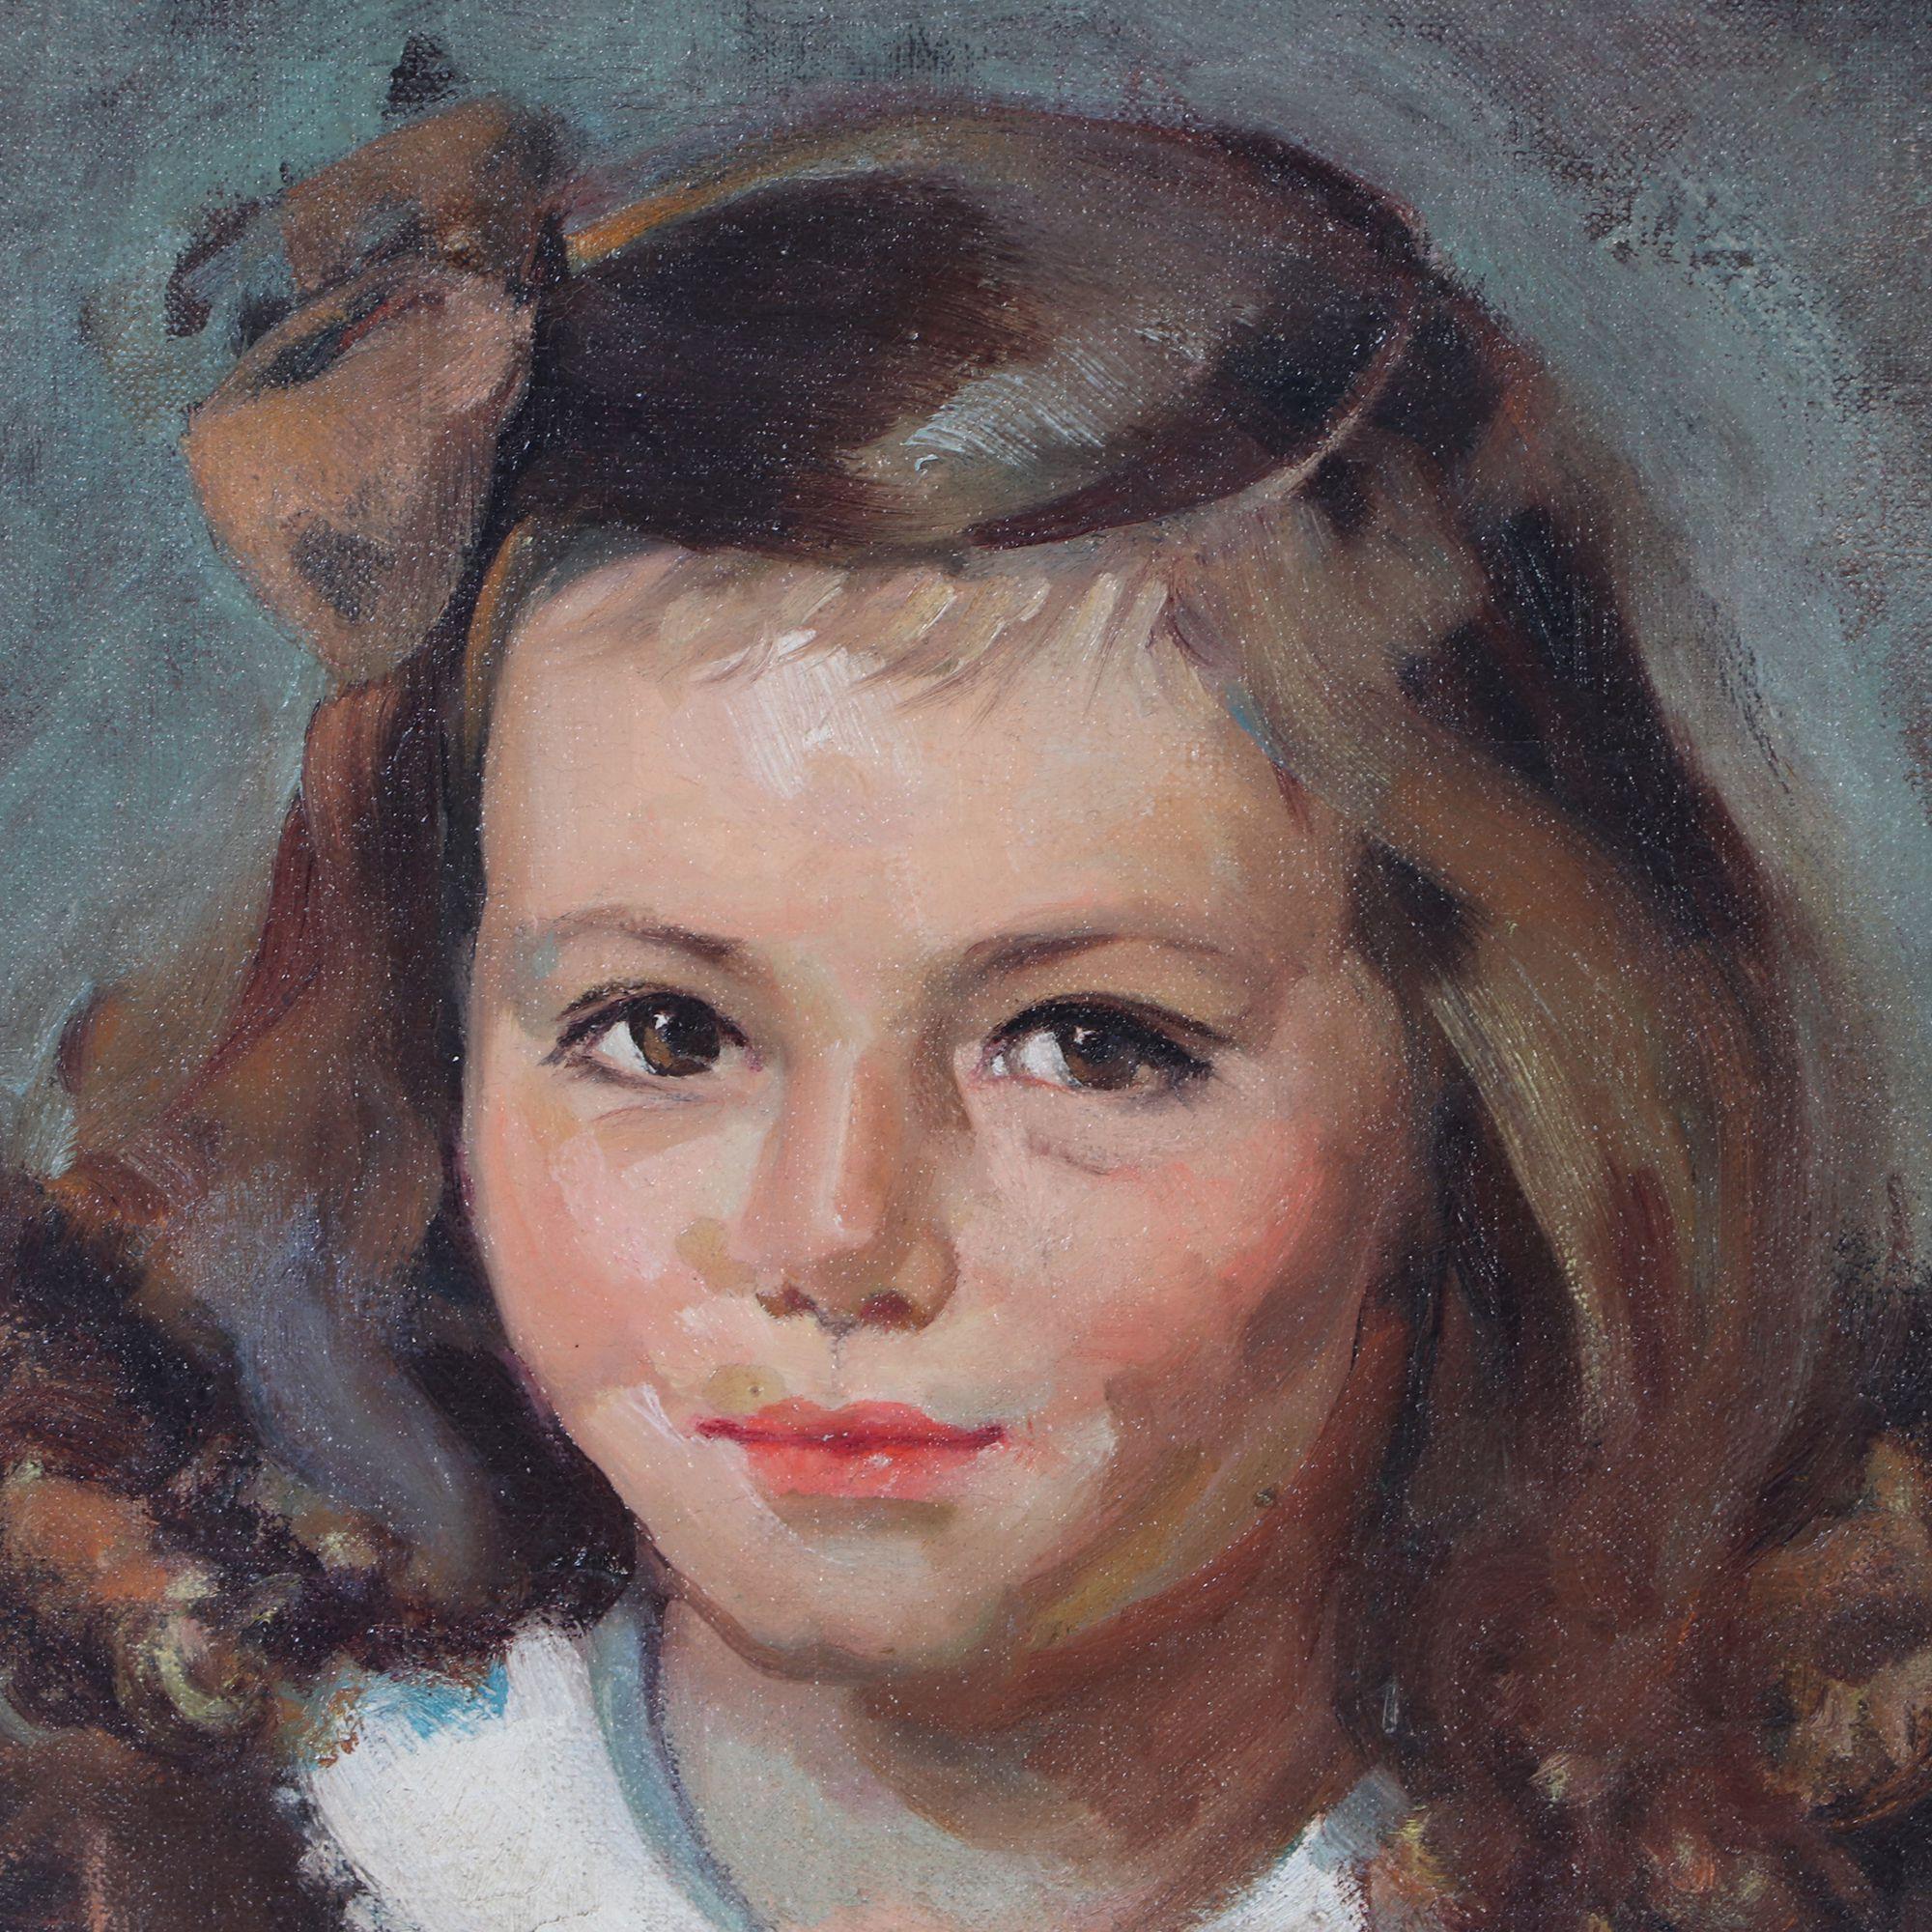 Magnifique huile sur toile, non signée. Portrait d'une jeune fille en robe brune et aux cheveux bruns. Au dos du tableau figure un autocollant portant la mention Marjorie and Adams.